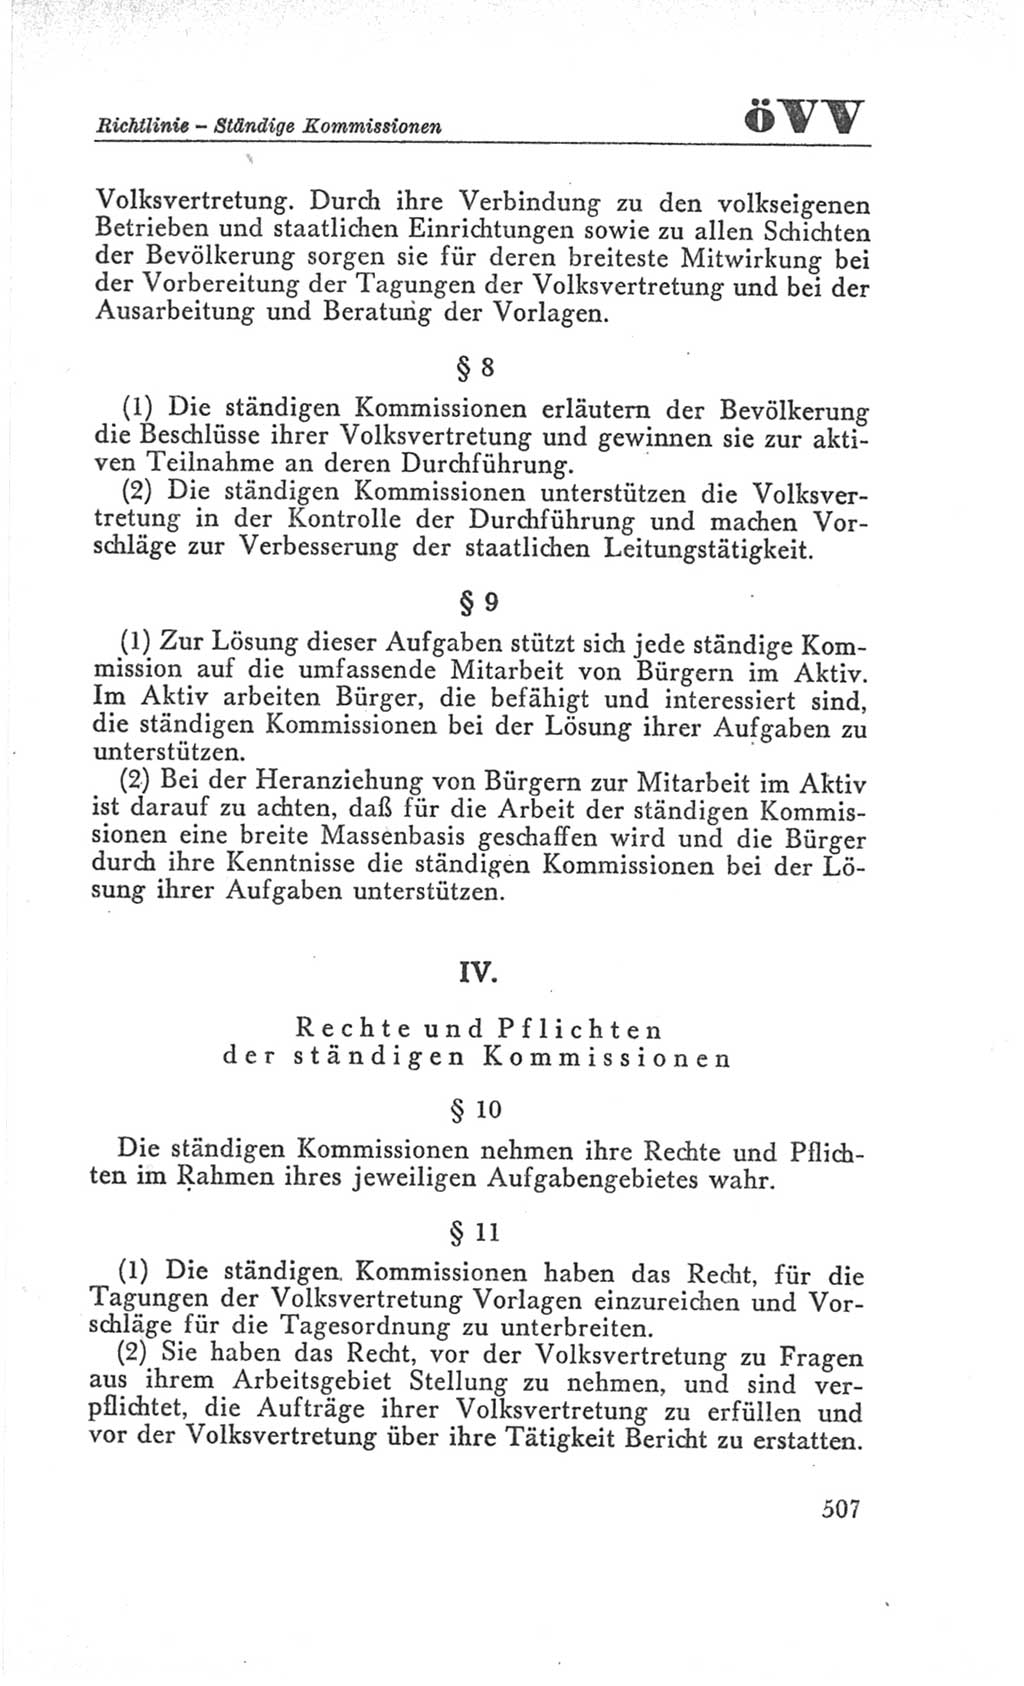 Handbuch der Volkskammer (VK) der Deutschen Demokratischen Republik (DDR), 3. Wahlperiode 1958-1963, Seite 507 (Hdb. VK. DDR 3. WP. 1958-1963, S. 507)